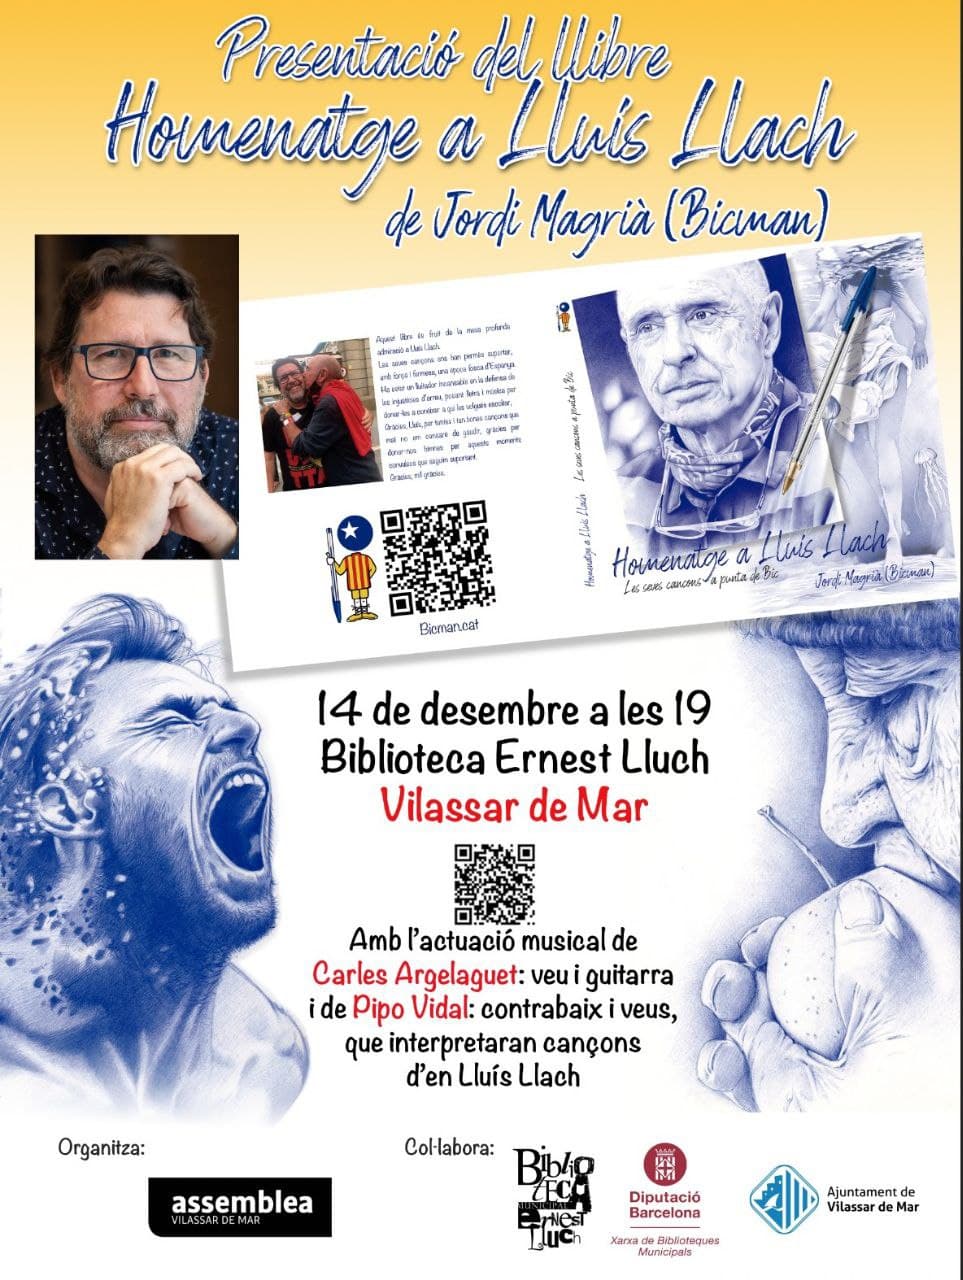 Presentació Llibre Jordi Magrià (Bicman)